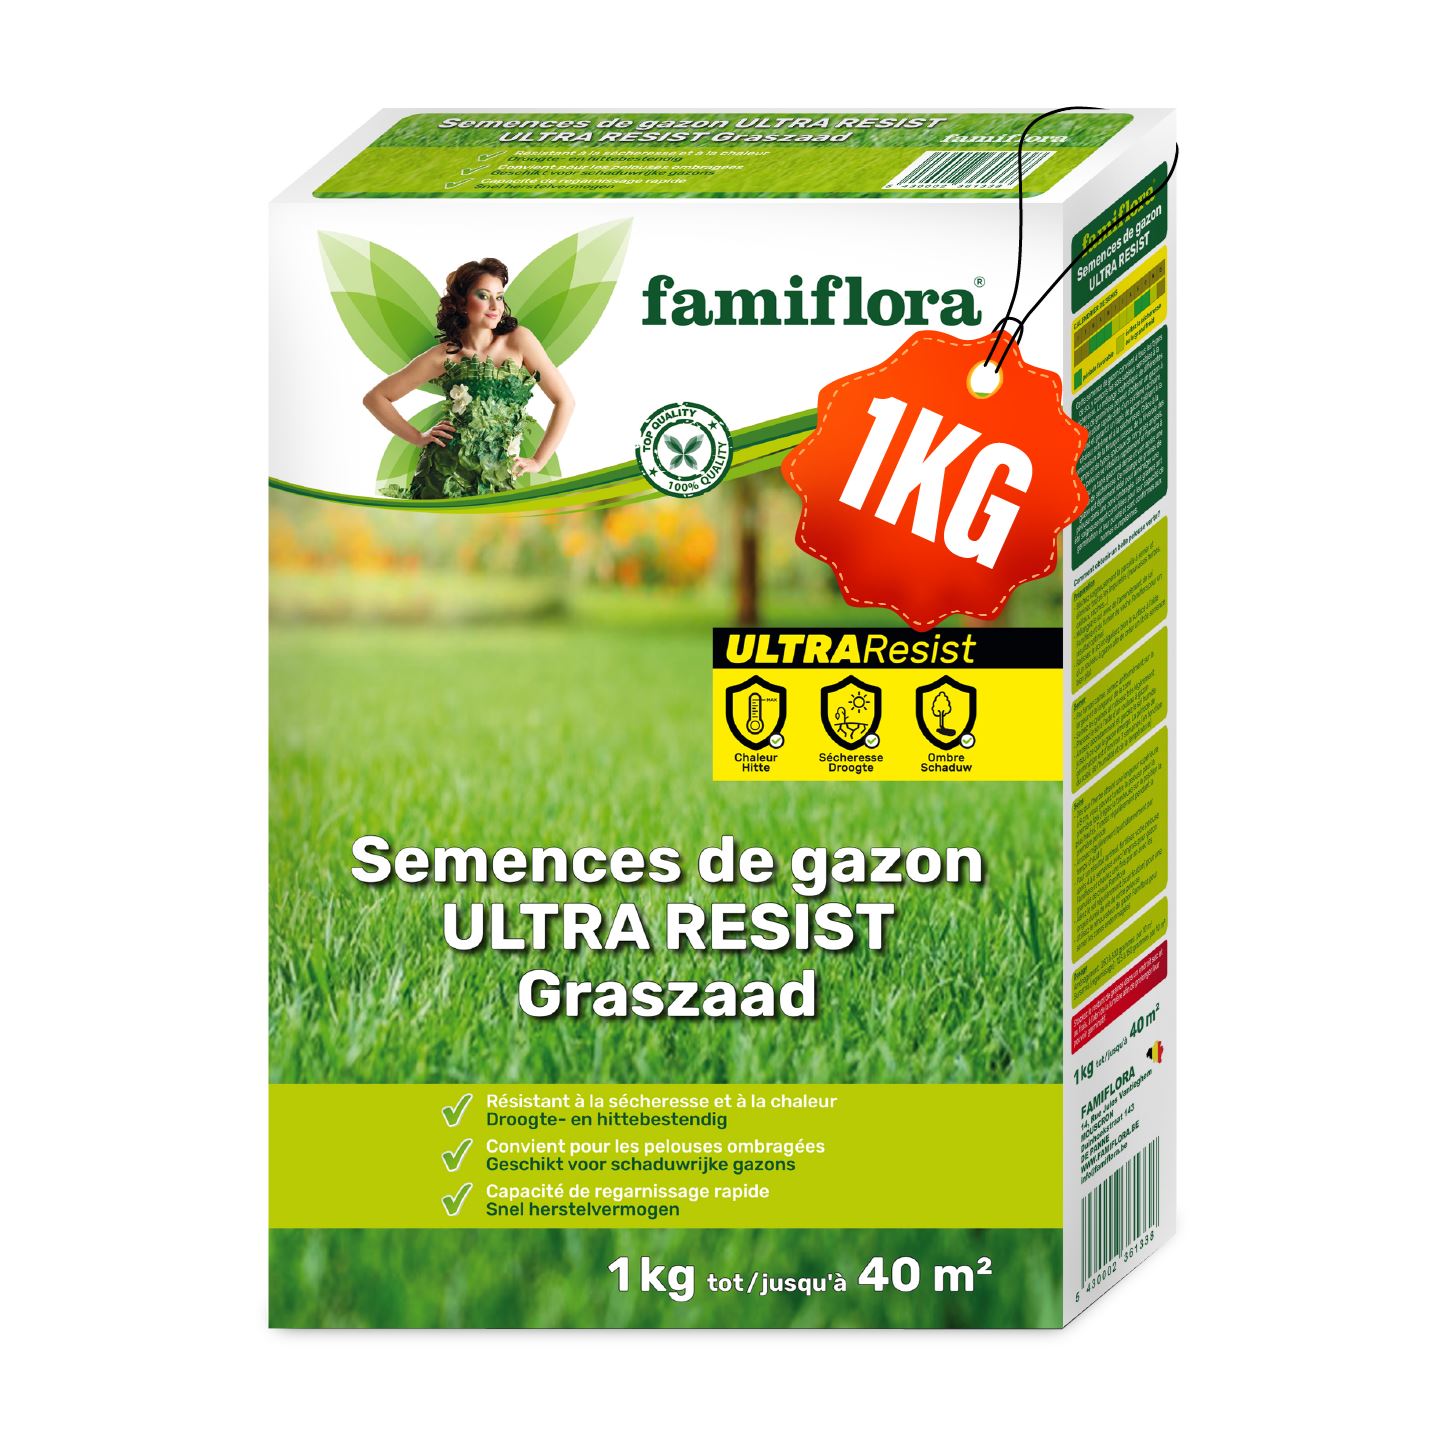 famiflora-ultra-resist-graszaad-1kg-tot-40m2